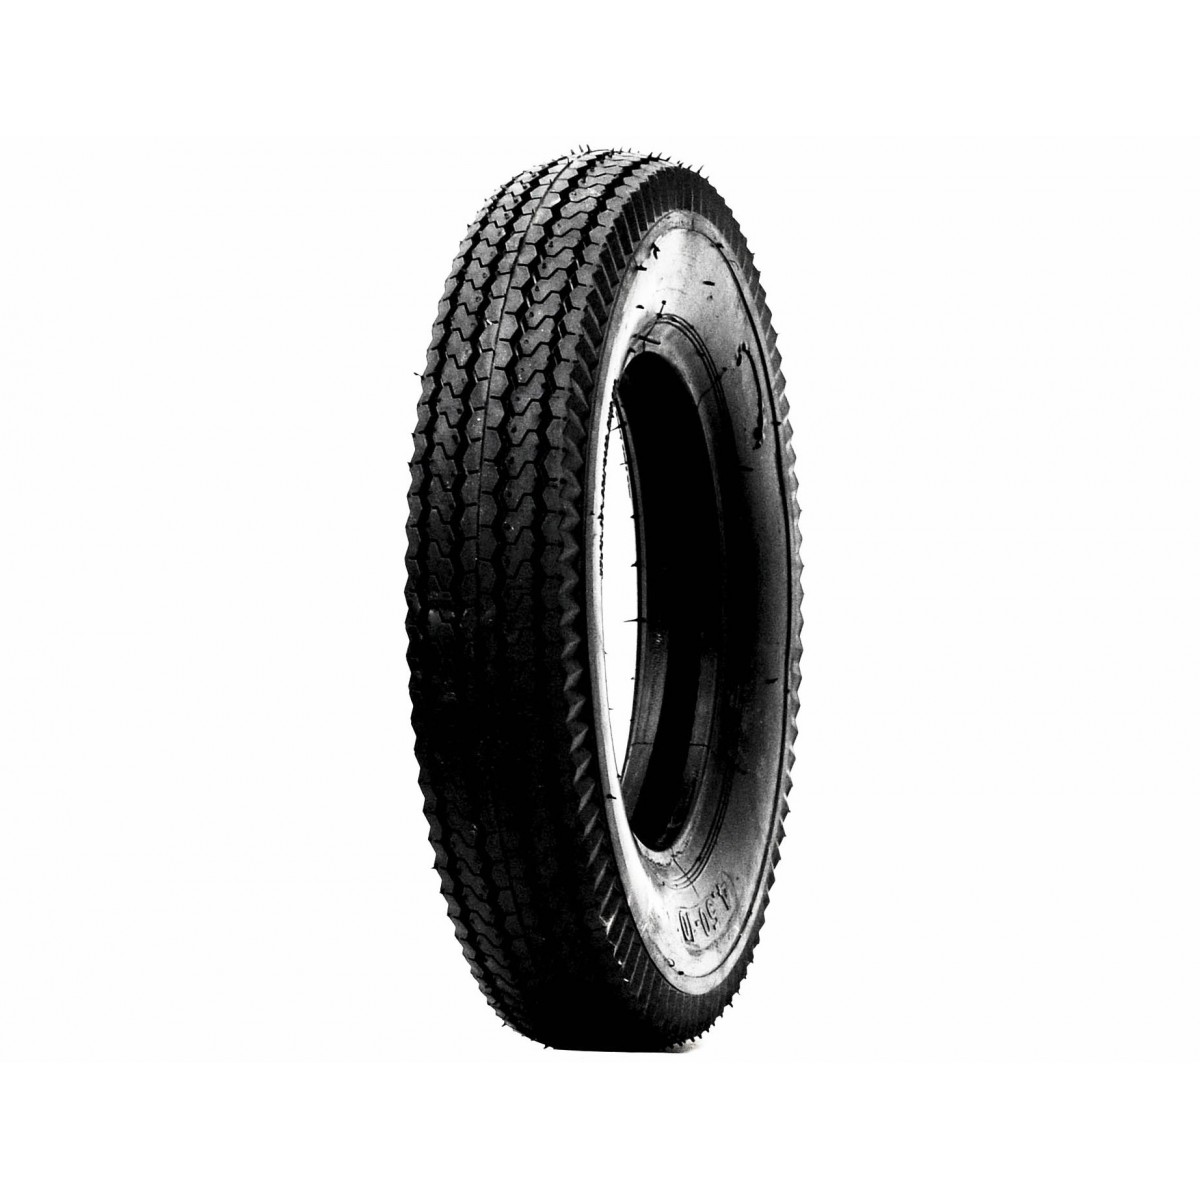 Agricultural tire 6.00-14 6PR 6-14 6x14 GRASS